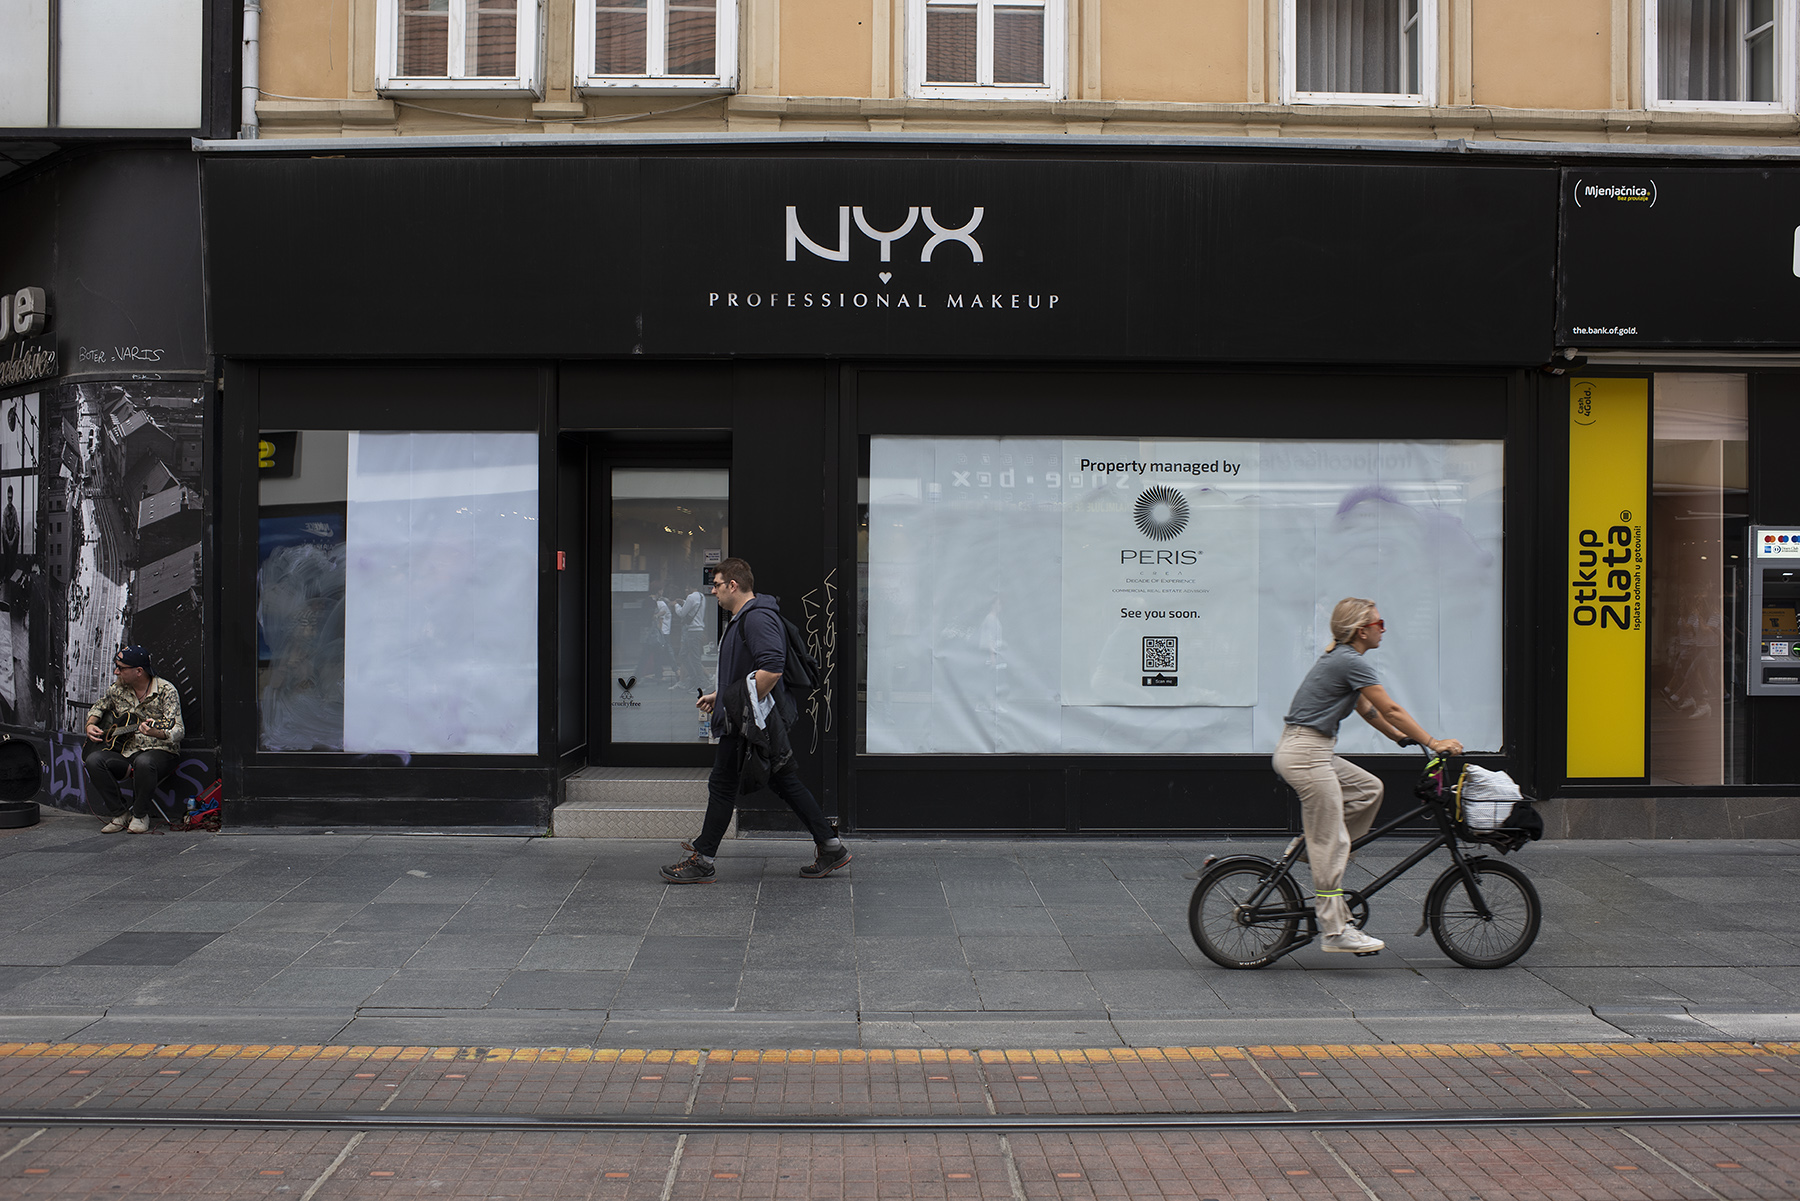 Ilica 19. Trgovina make up branda NYX zatvorena je u rujnu kada su zatvorene apsolutno sve trgovine ovog brenda u Hrvatskoj. 